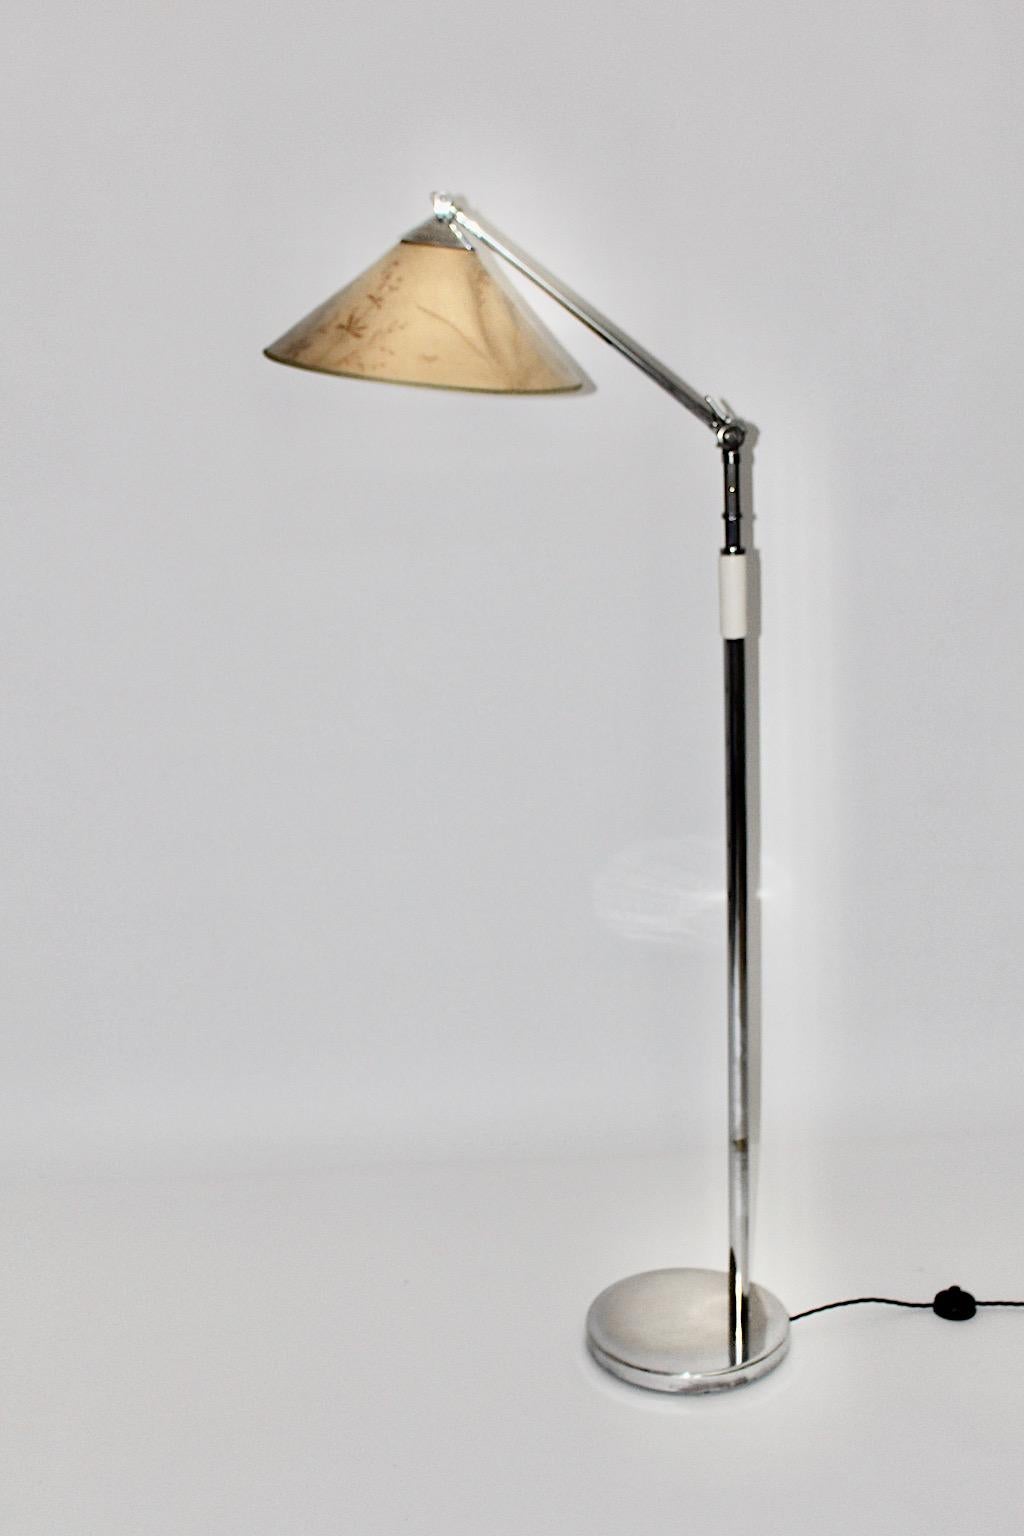 Art Deco Stehlampe von Kaspar & Sic Kunstgewerbe Werkstätte für Metallarbeiten, Wien, 1932 aus vernickeltem Messing, mit weißem Holzgriff und originalem Lampenschirm. Für einen sicheren Stand verfügt er über einen Metallfuß.
Der originelle